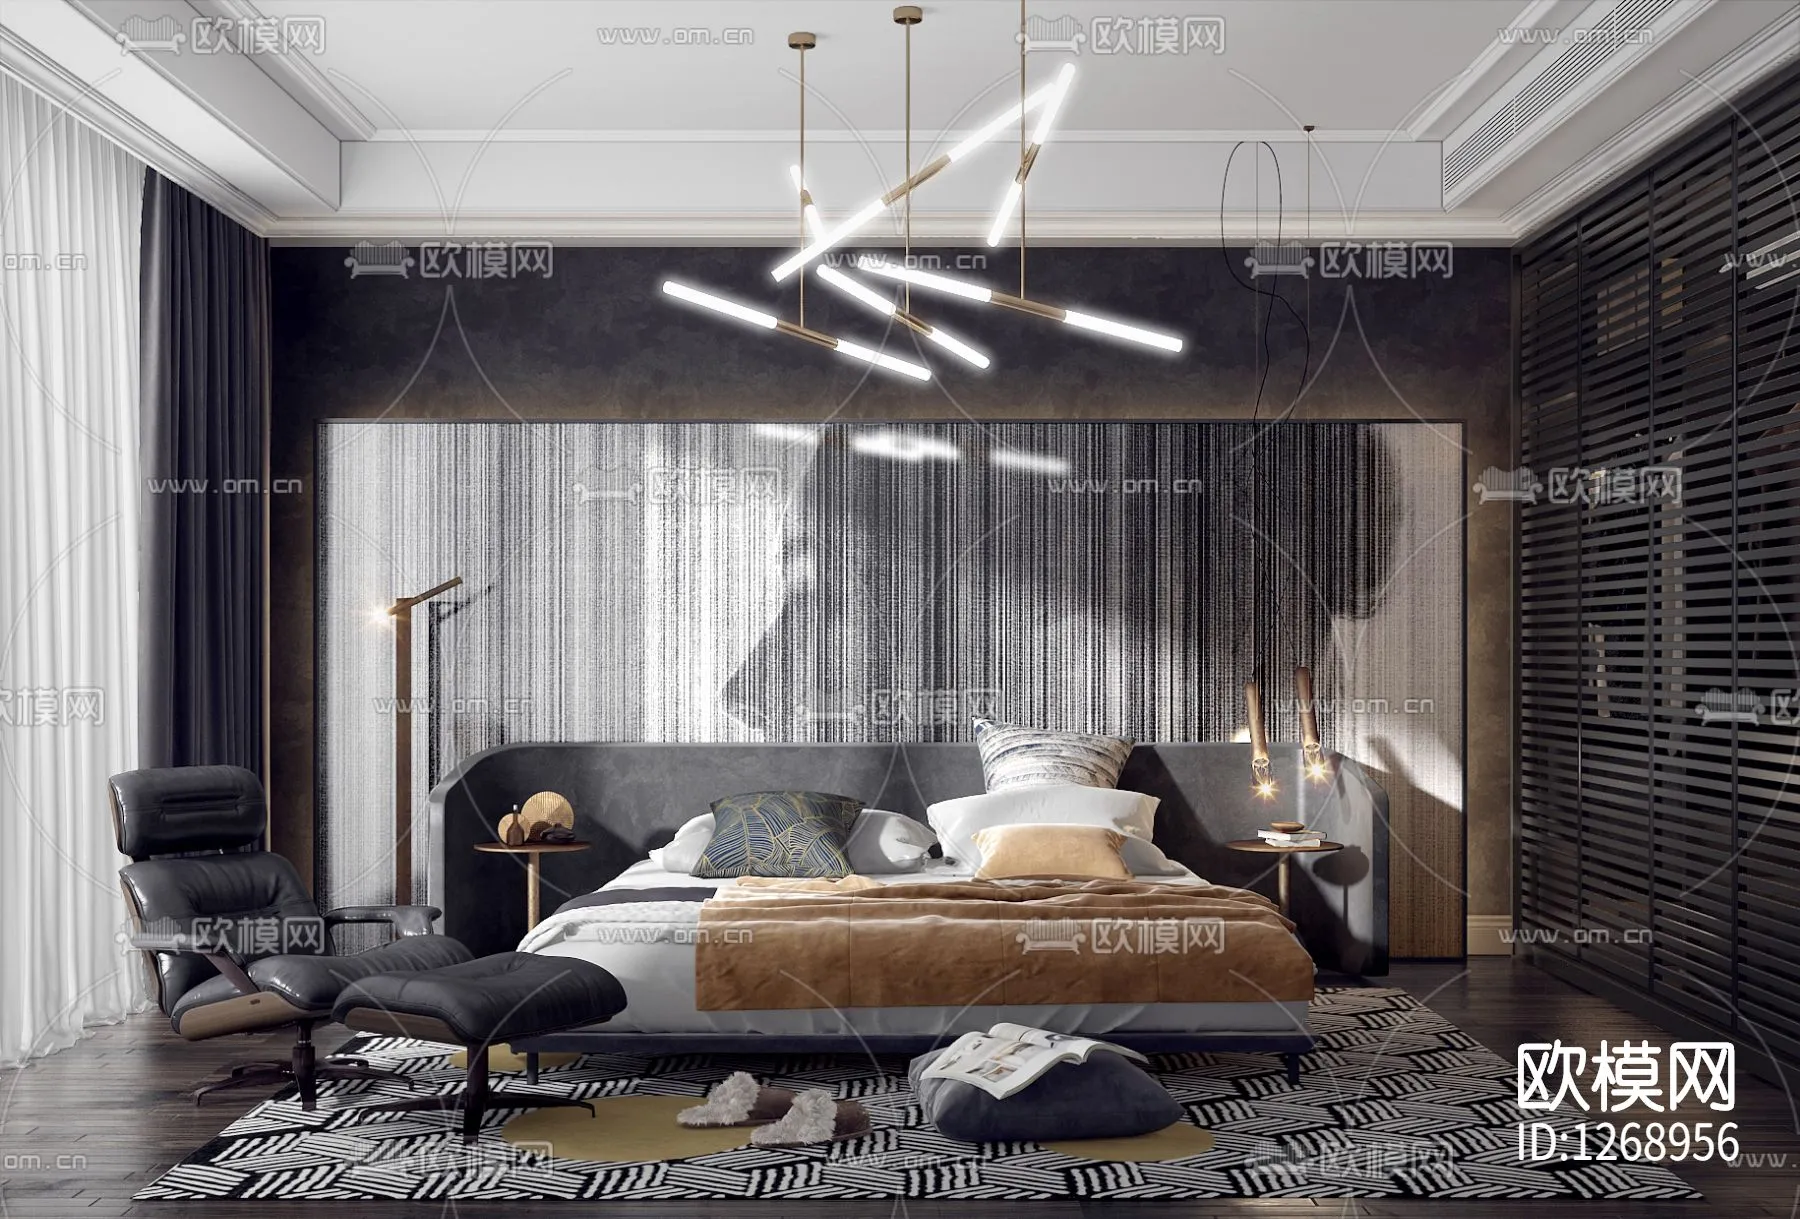 Bedroom 3D Scenes – 0207